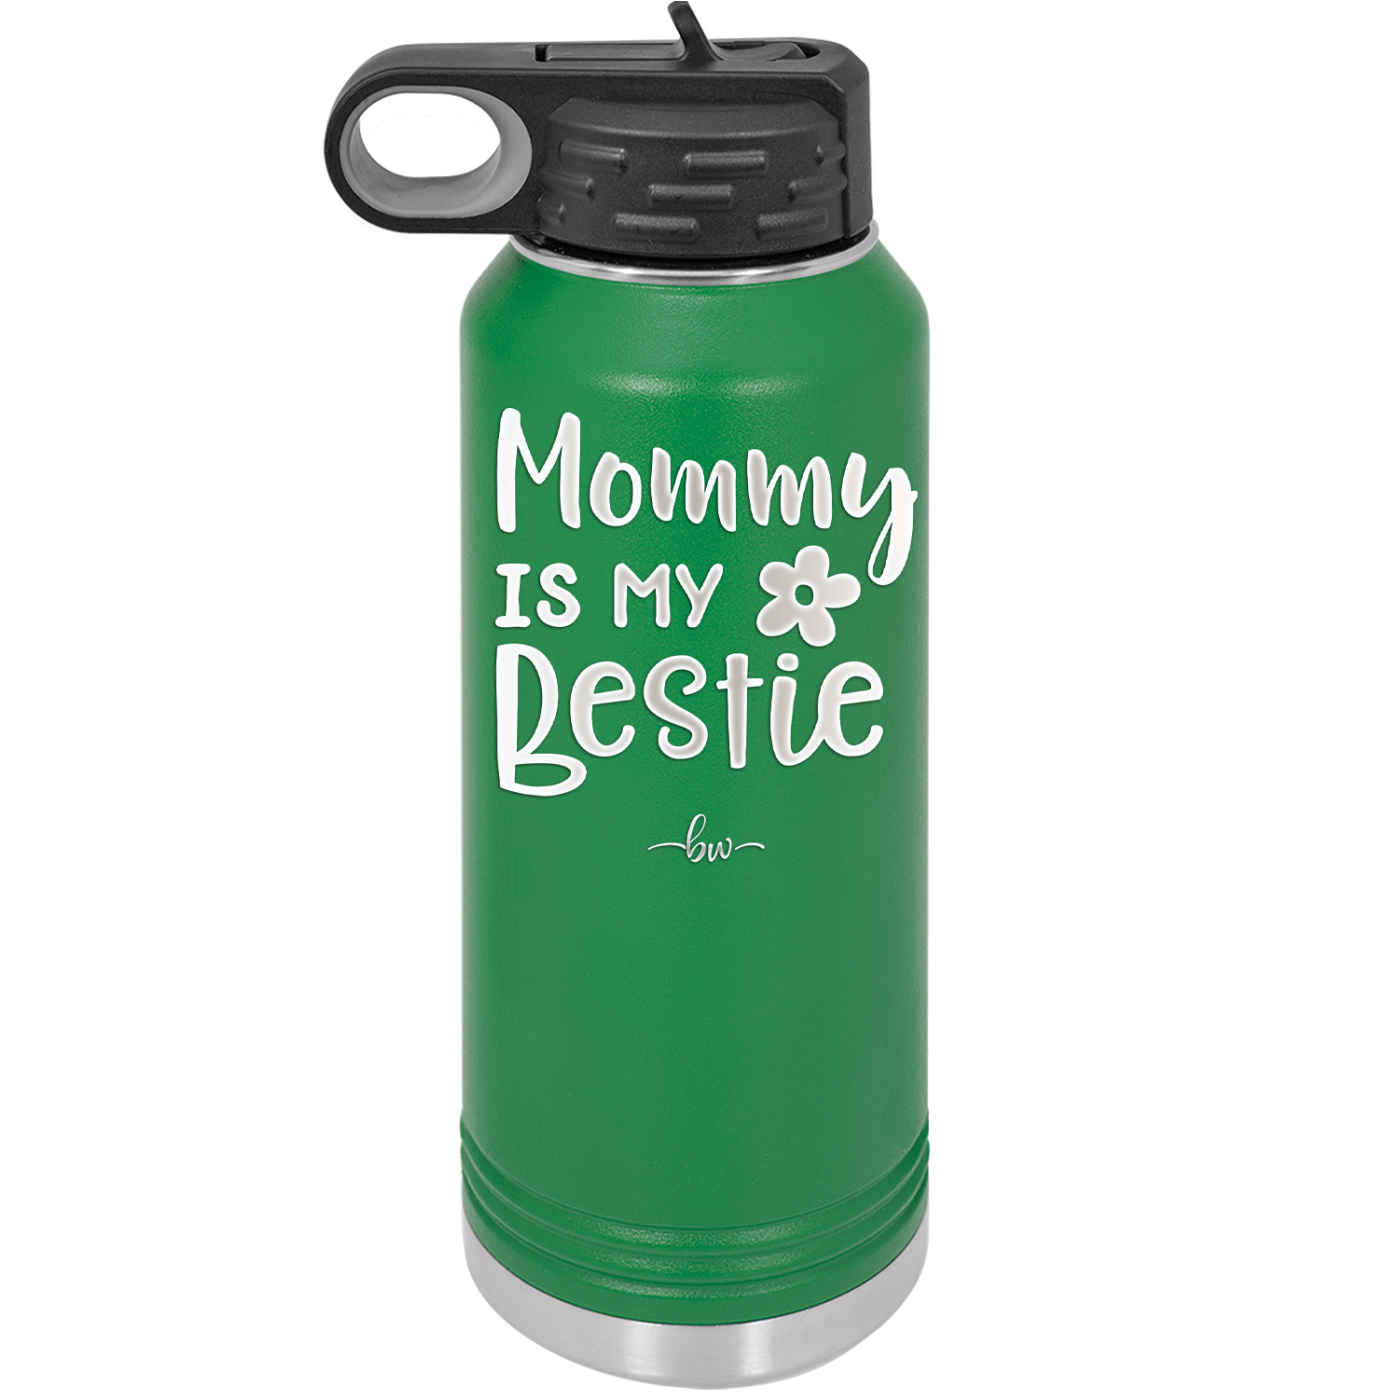 Mommy is My Bestie - Laser Engraved Stainless Steel Drinkware - 1996 -